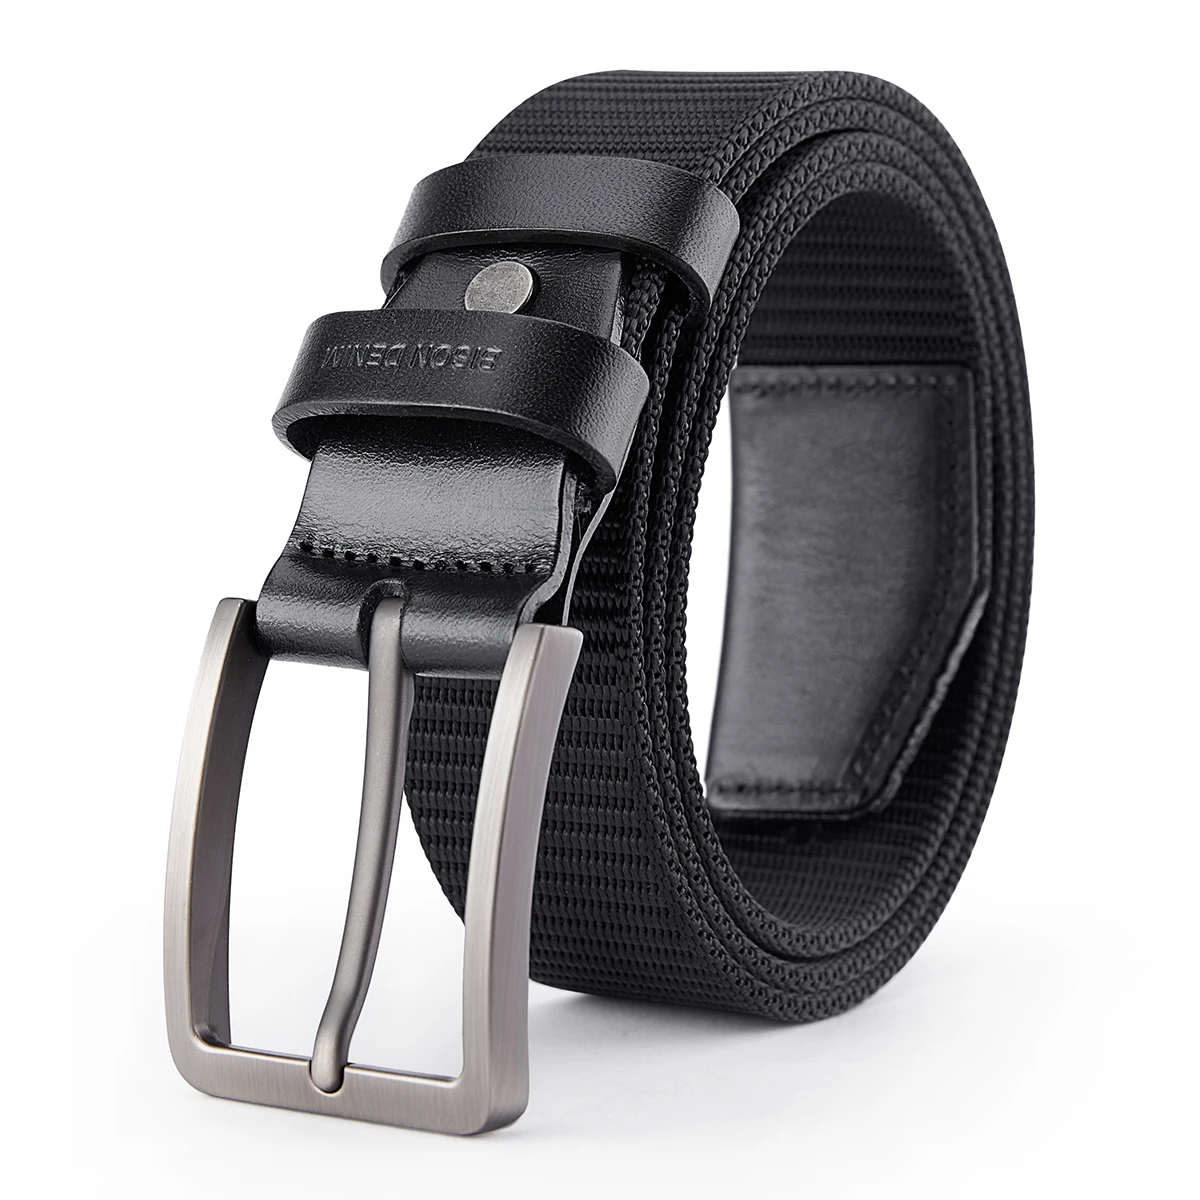 branded belt for men BISN DENIM High Quality Men Belt Luxury Strap Tactical Military Canvas Waistband Genuine Leather Training Belt Pin Buckle Belt men's belts Belts